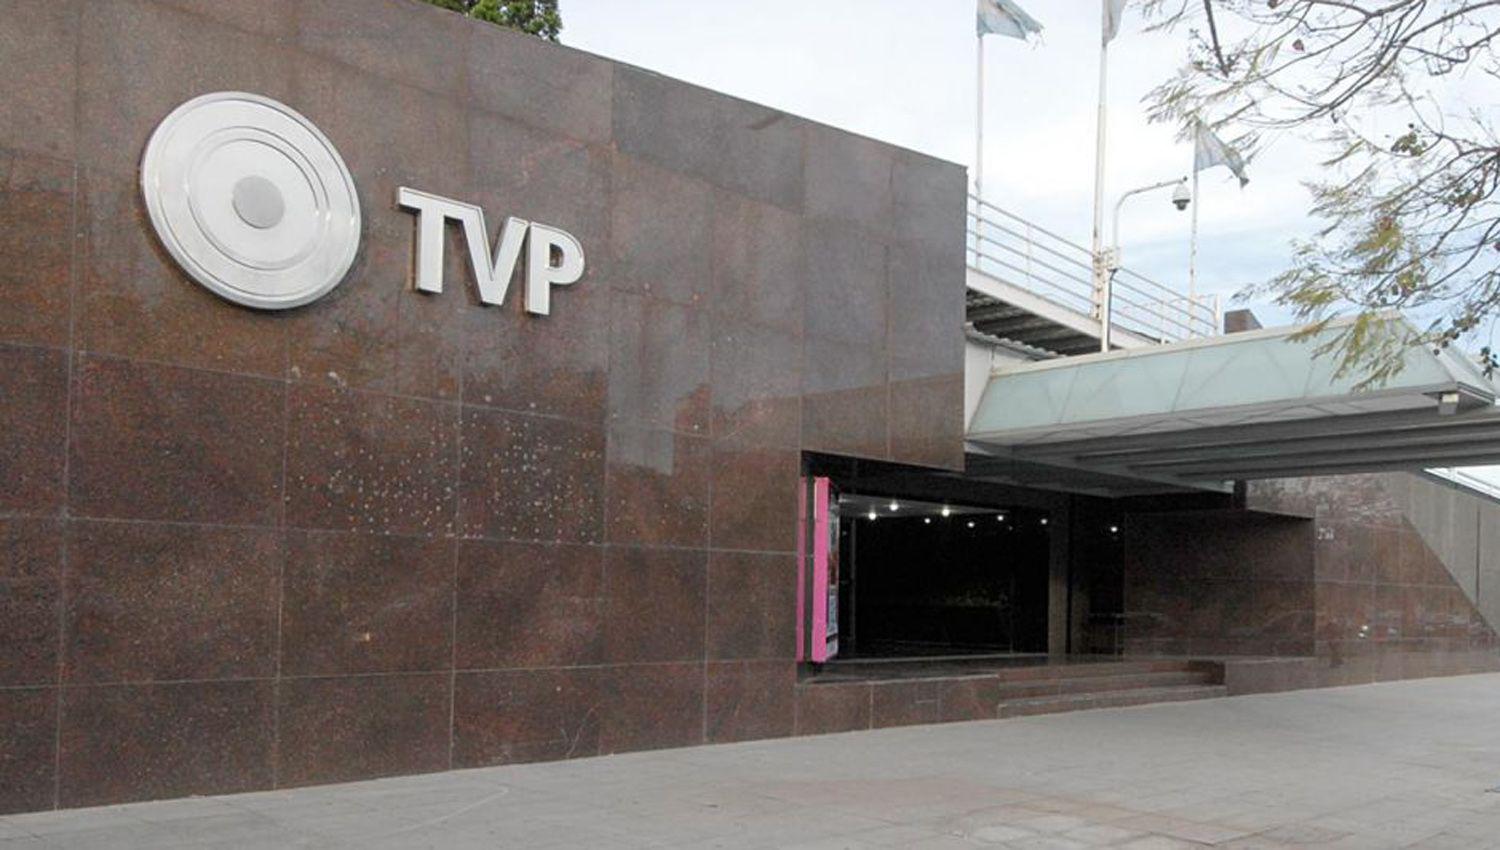 TV Puacuteblica- El 42-en-porciento- de los sueldos estaacute entre los 200000 y los 600000 pesos